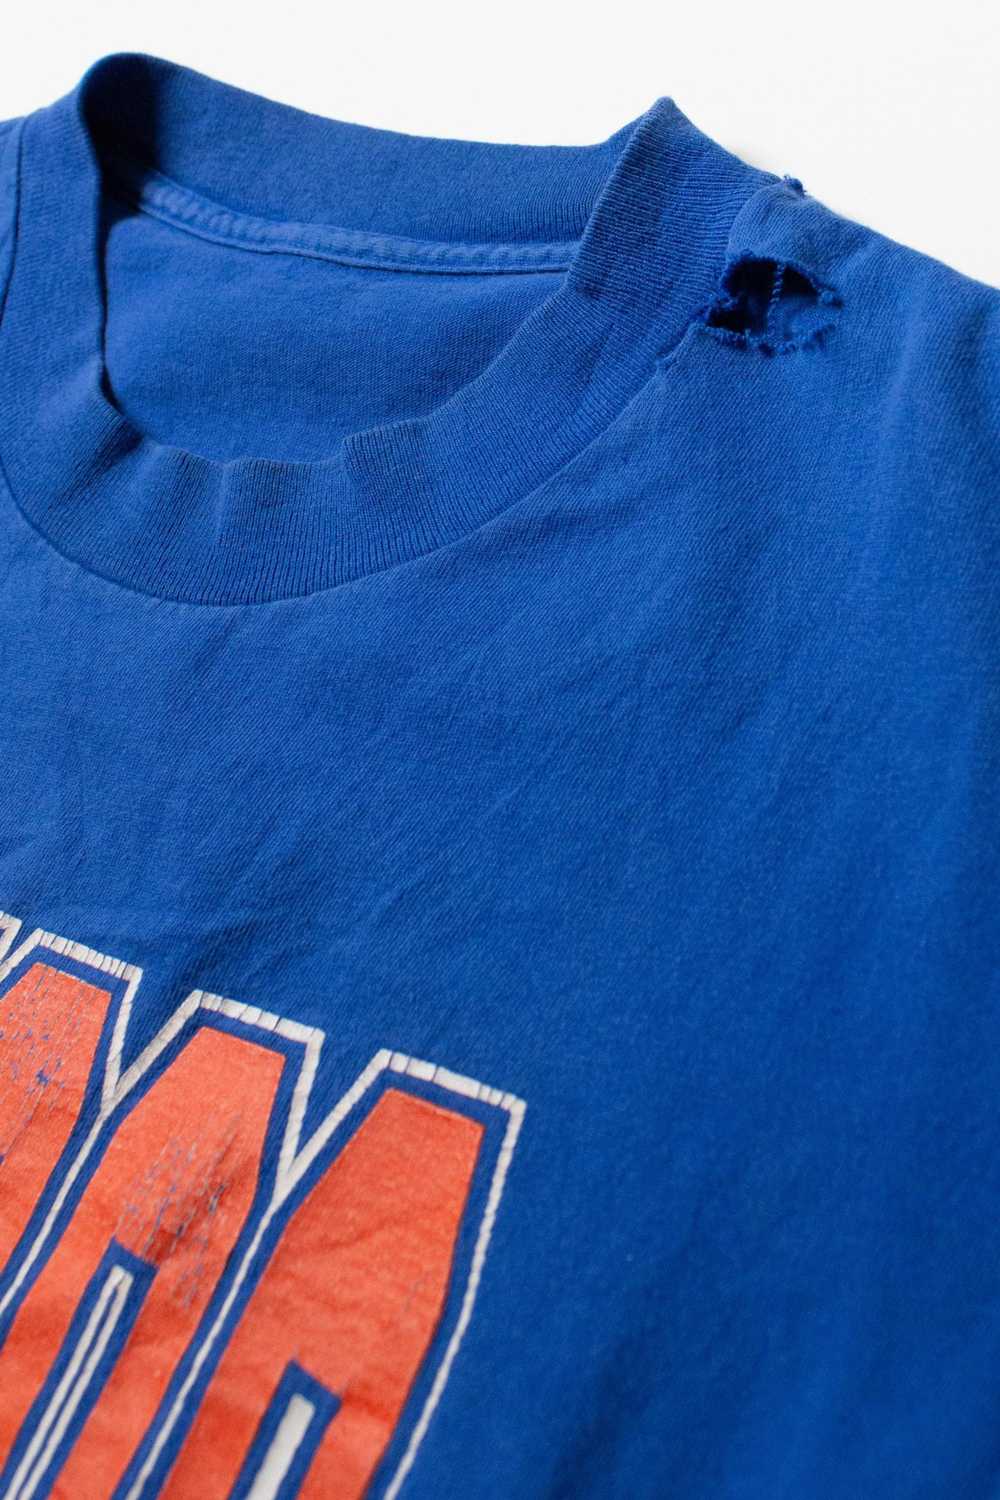 Vintage Denver Broncos T-Shirt (1990s) - image 3